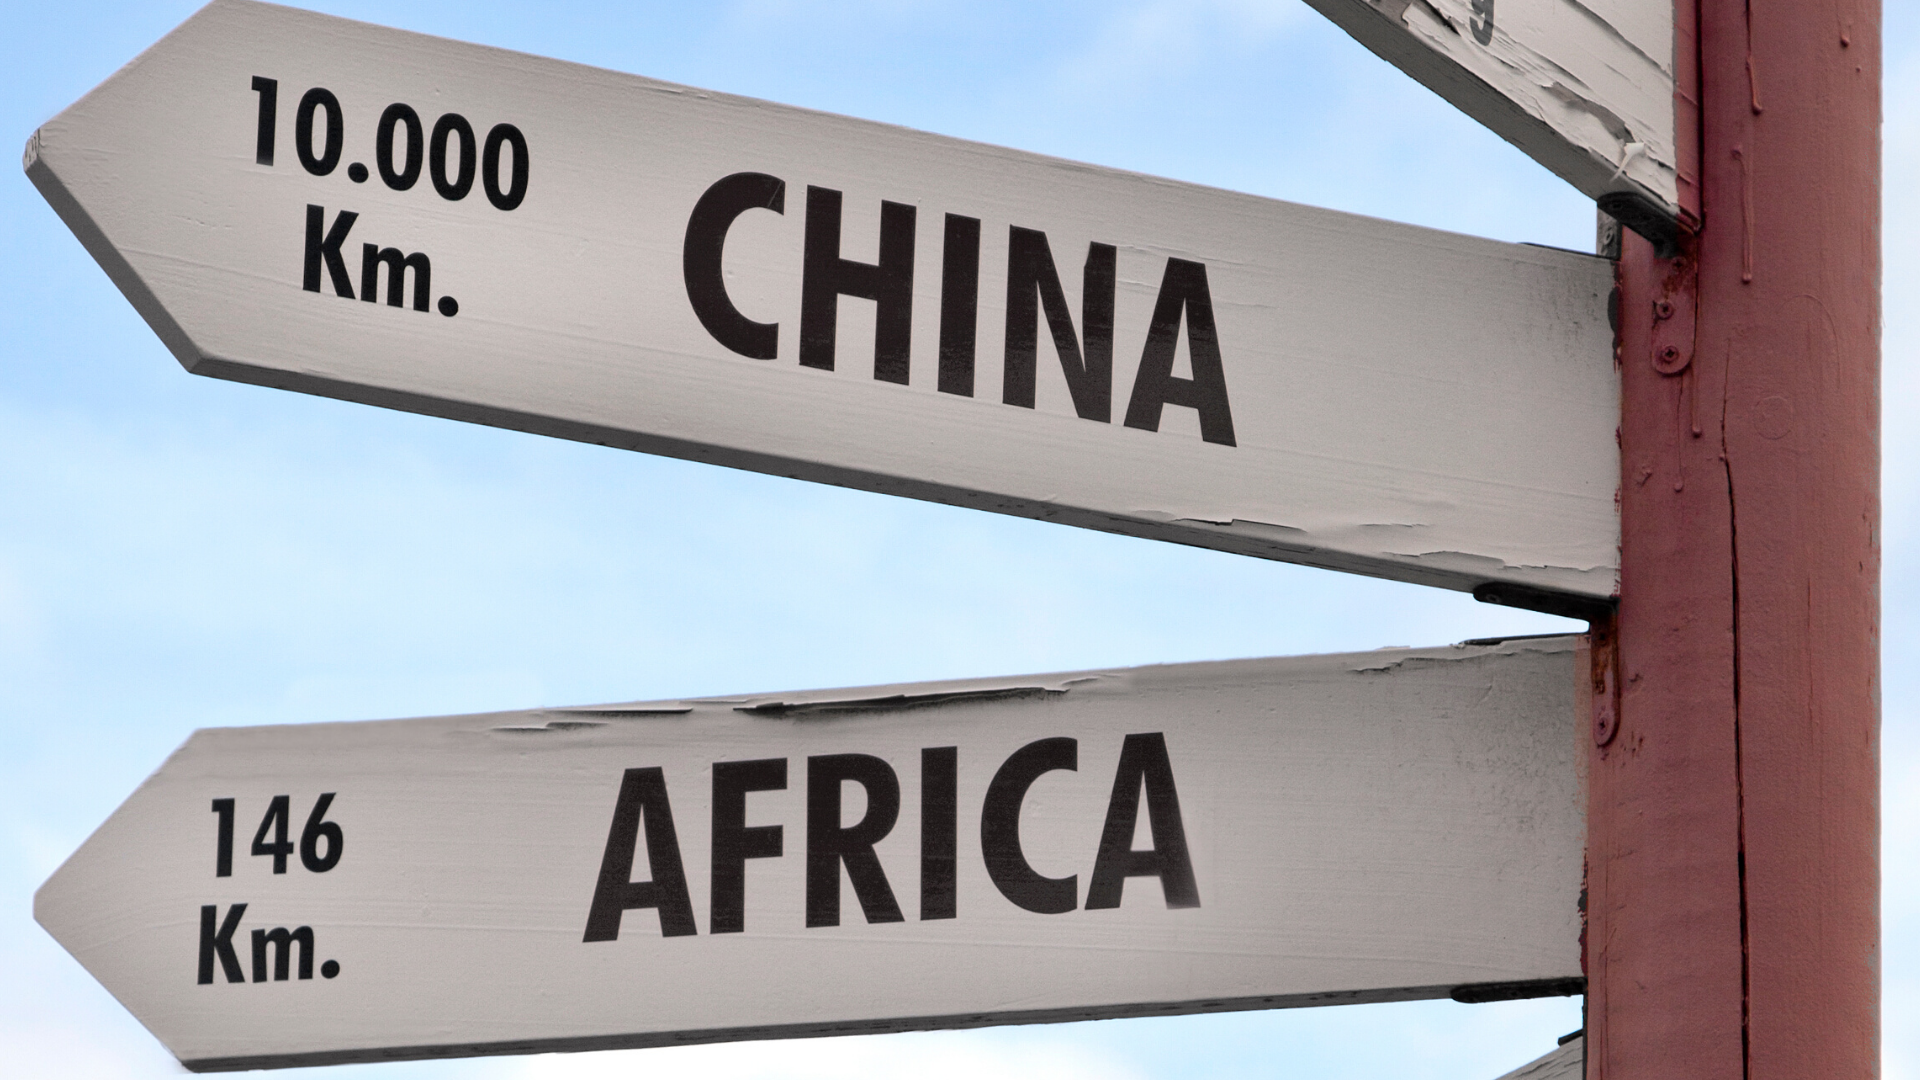 Le Chinafricanisme occidental : discours et limites d’une appréciation parfois biaisée